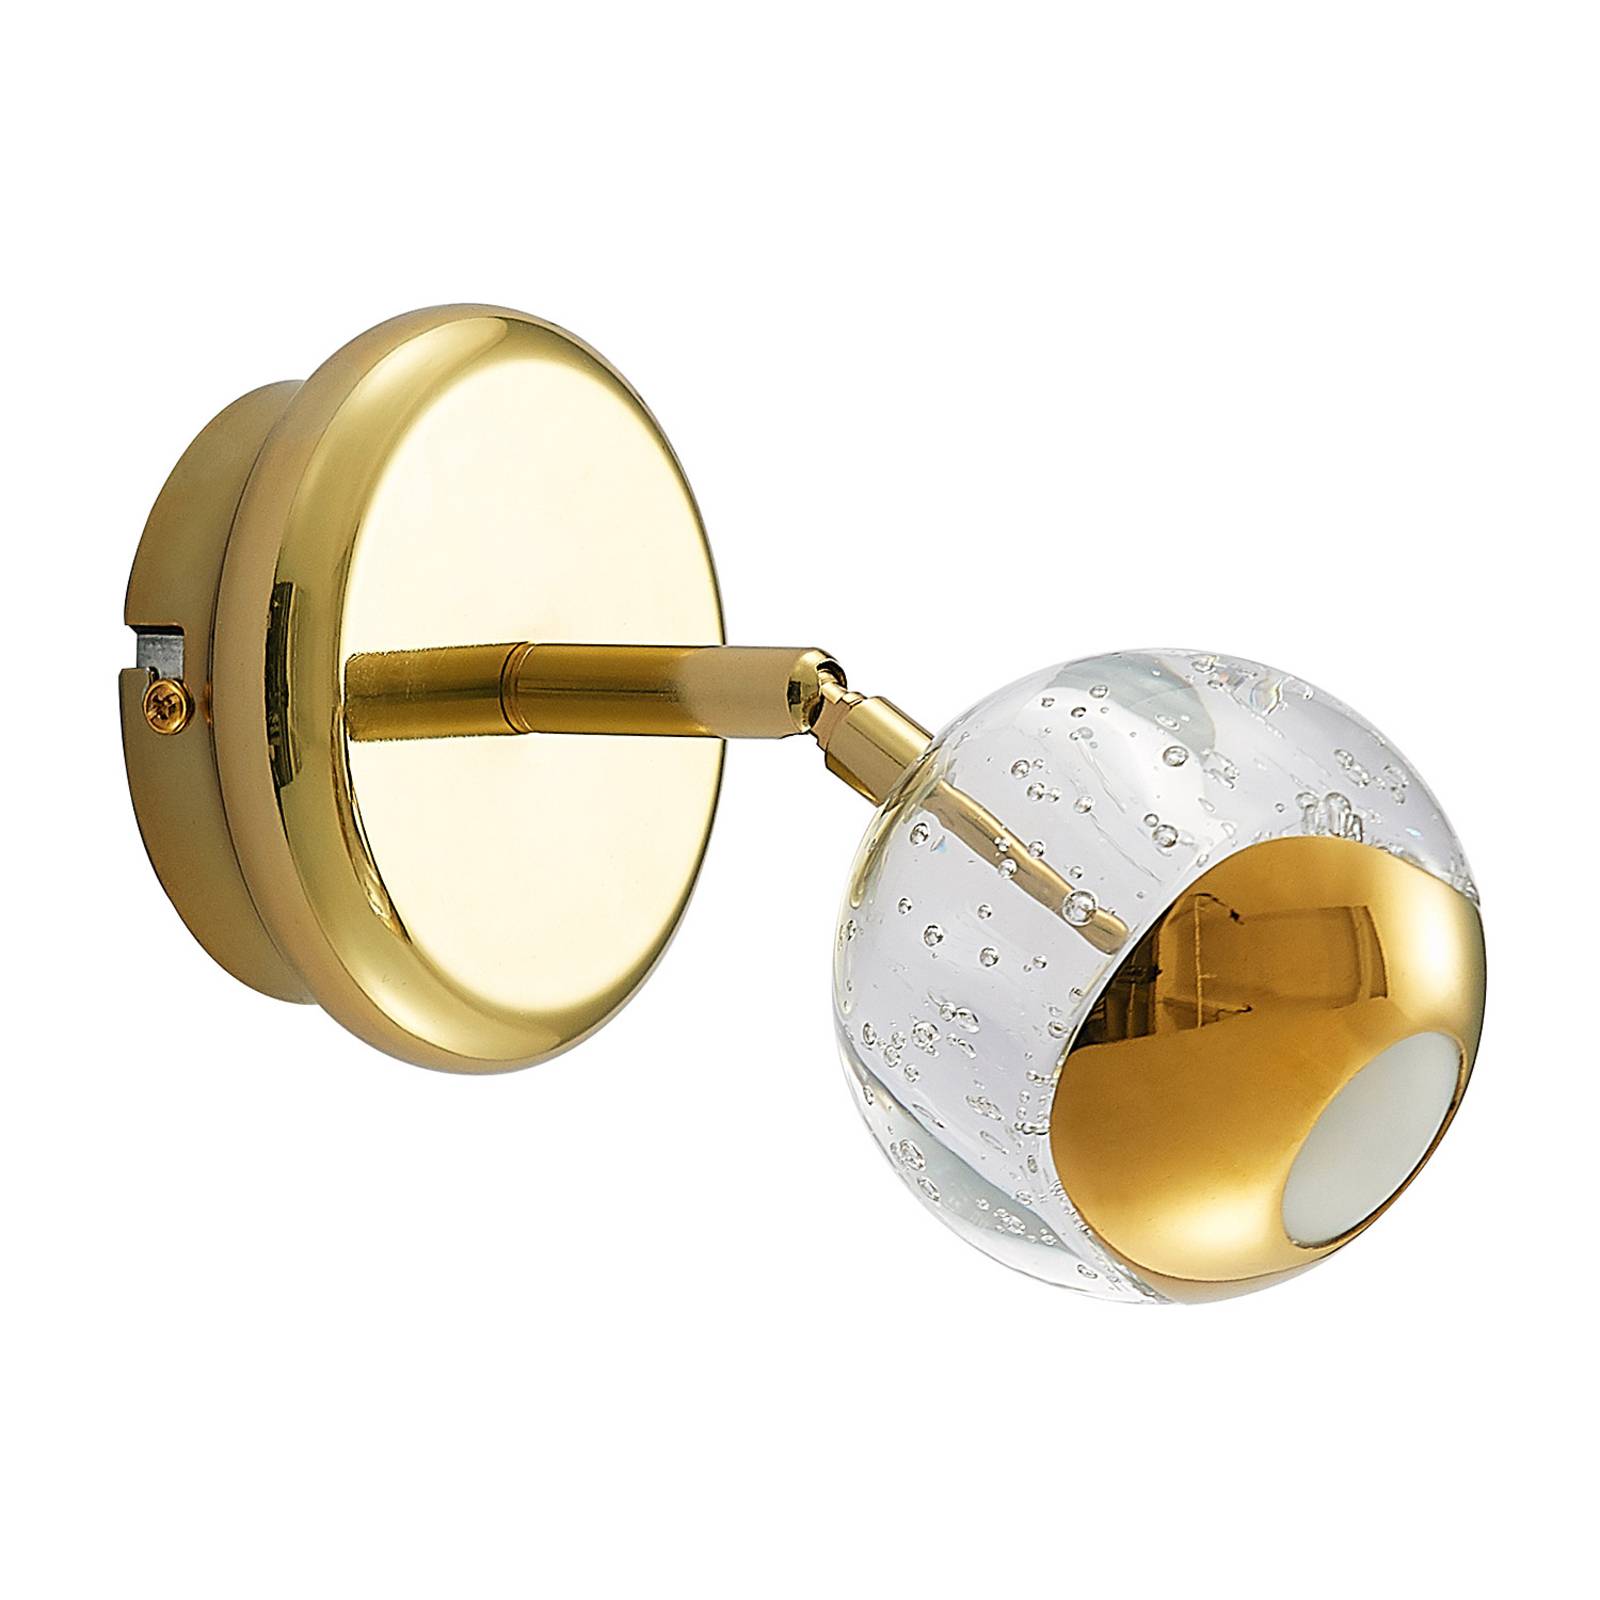 Lucande Kilio LED-spot üveg ernyővel, arany